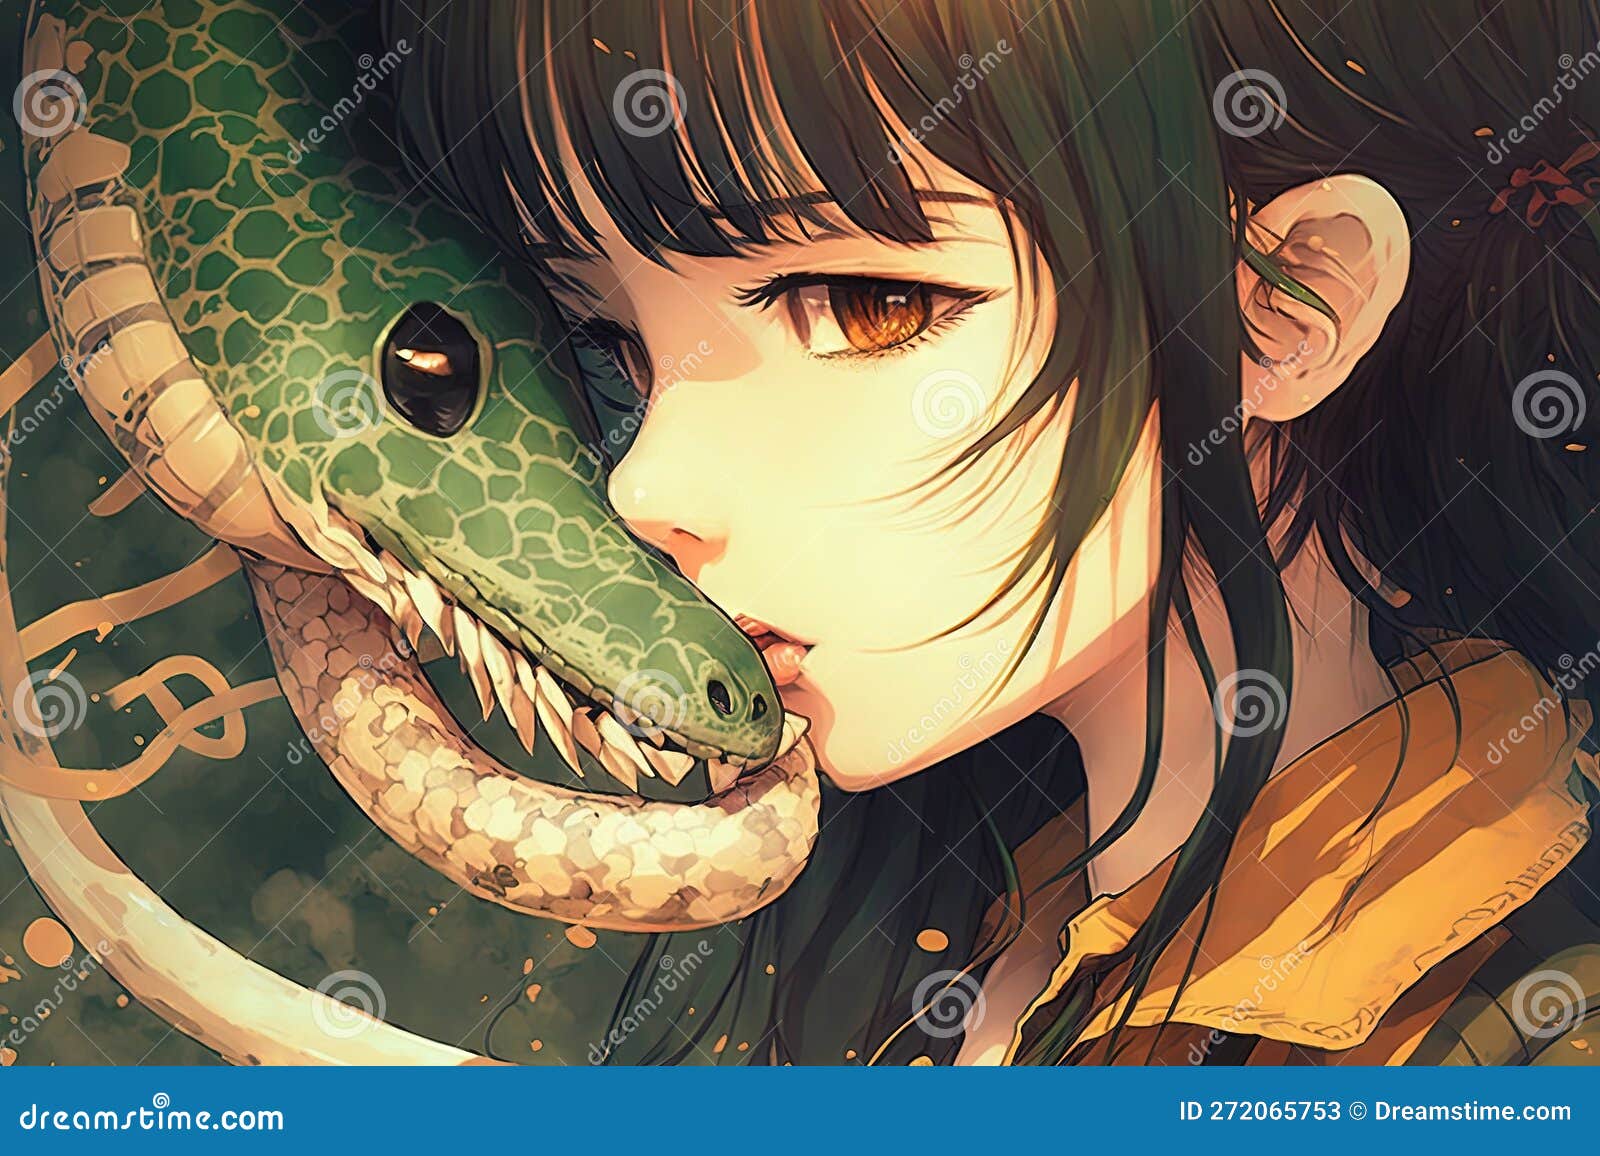 doug eckard recommends Snake Girl Anime